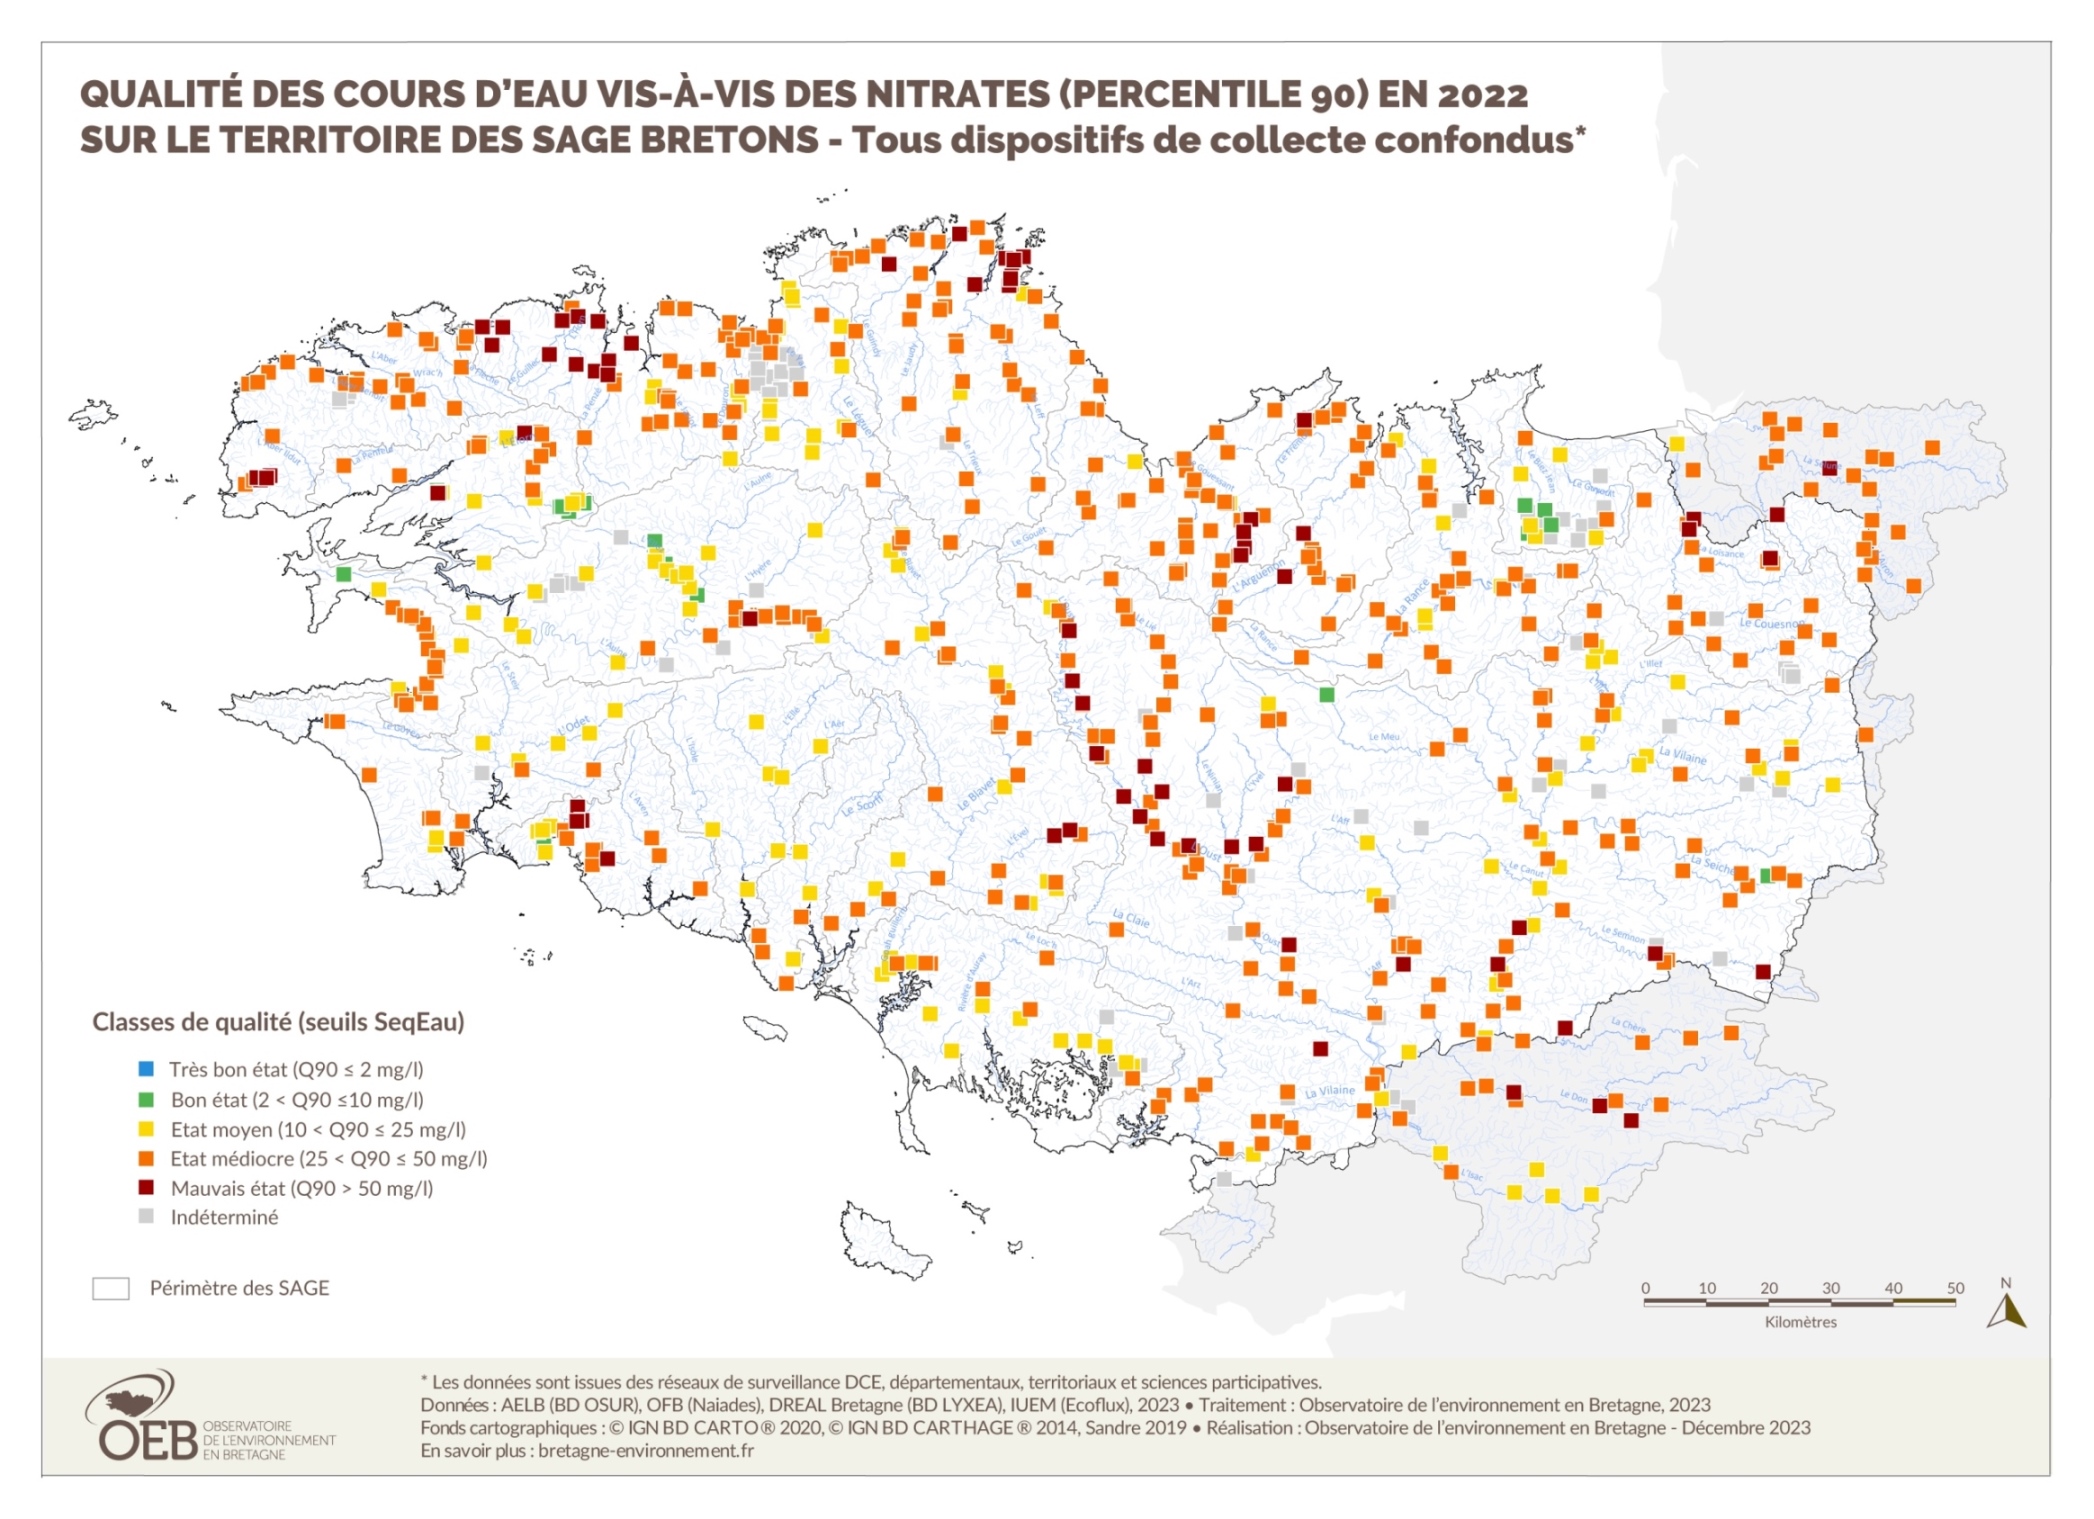 Qualité des cours d'eau bretons vis-à-vis des nitrates (Q90) en 2019